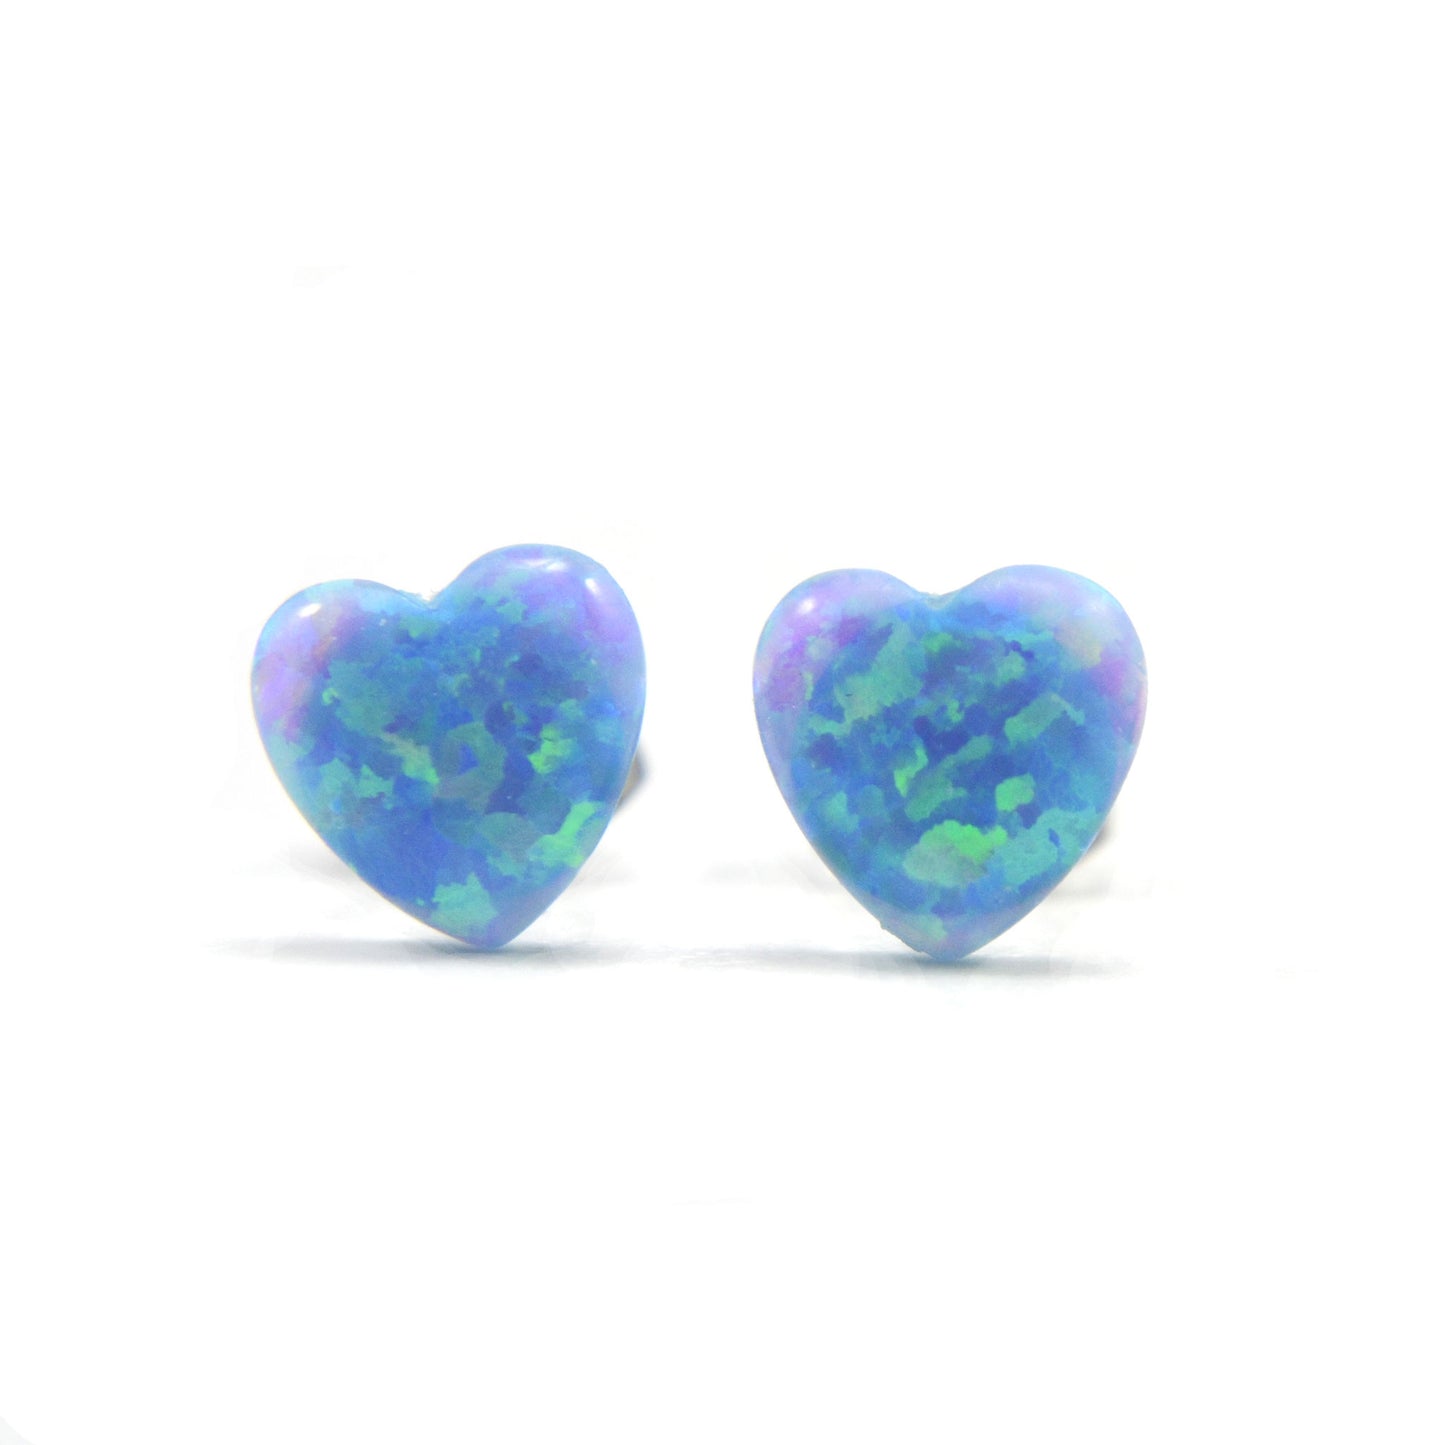 Blue opal heart earrings on white background